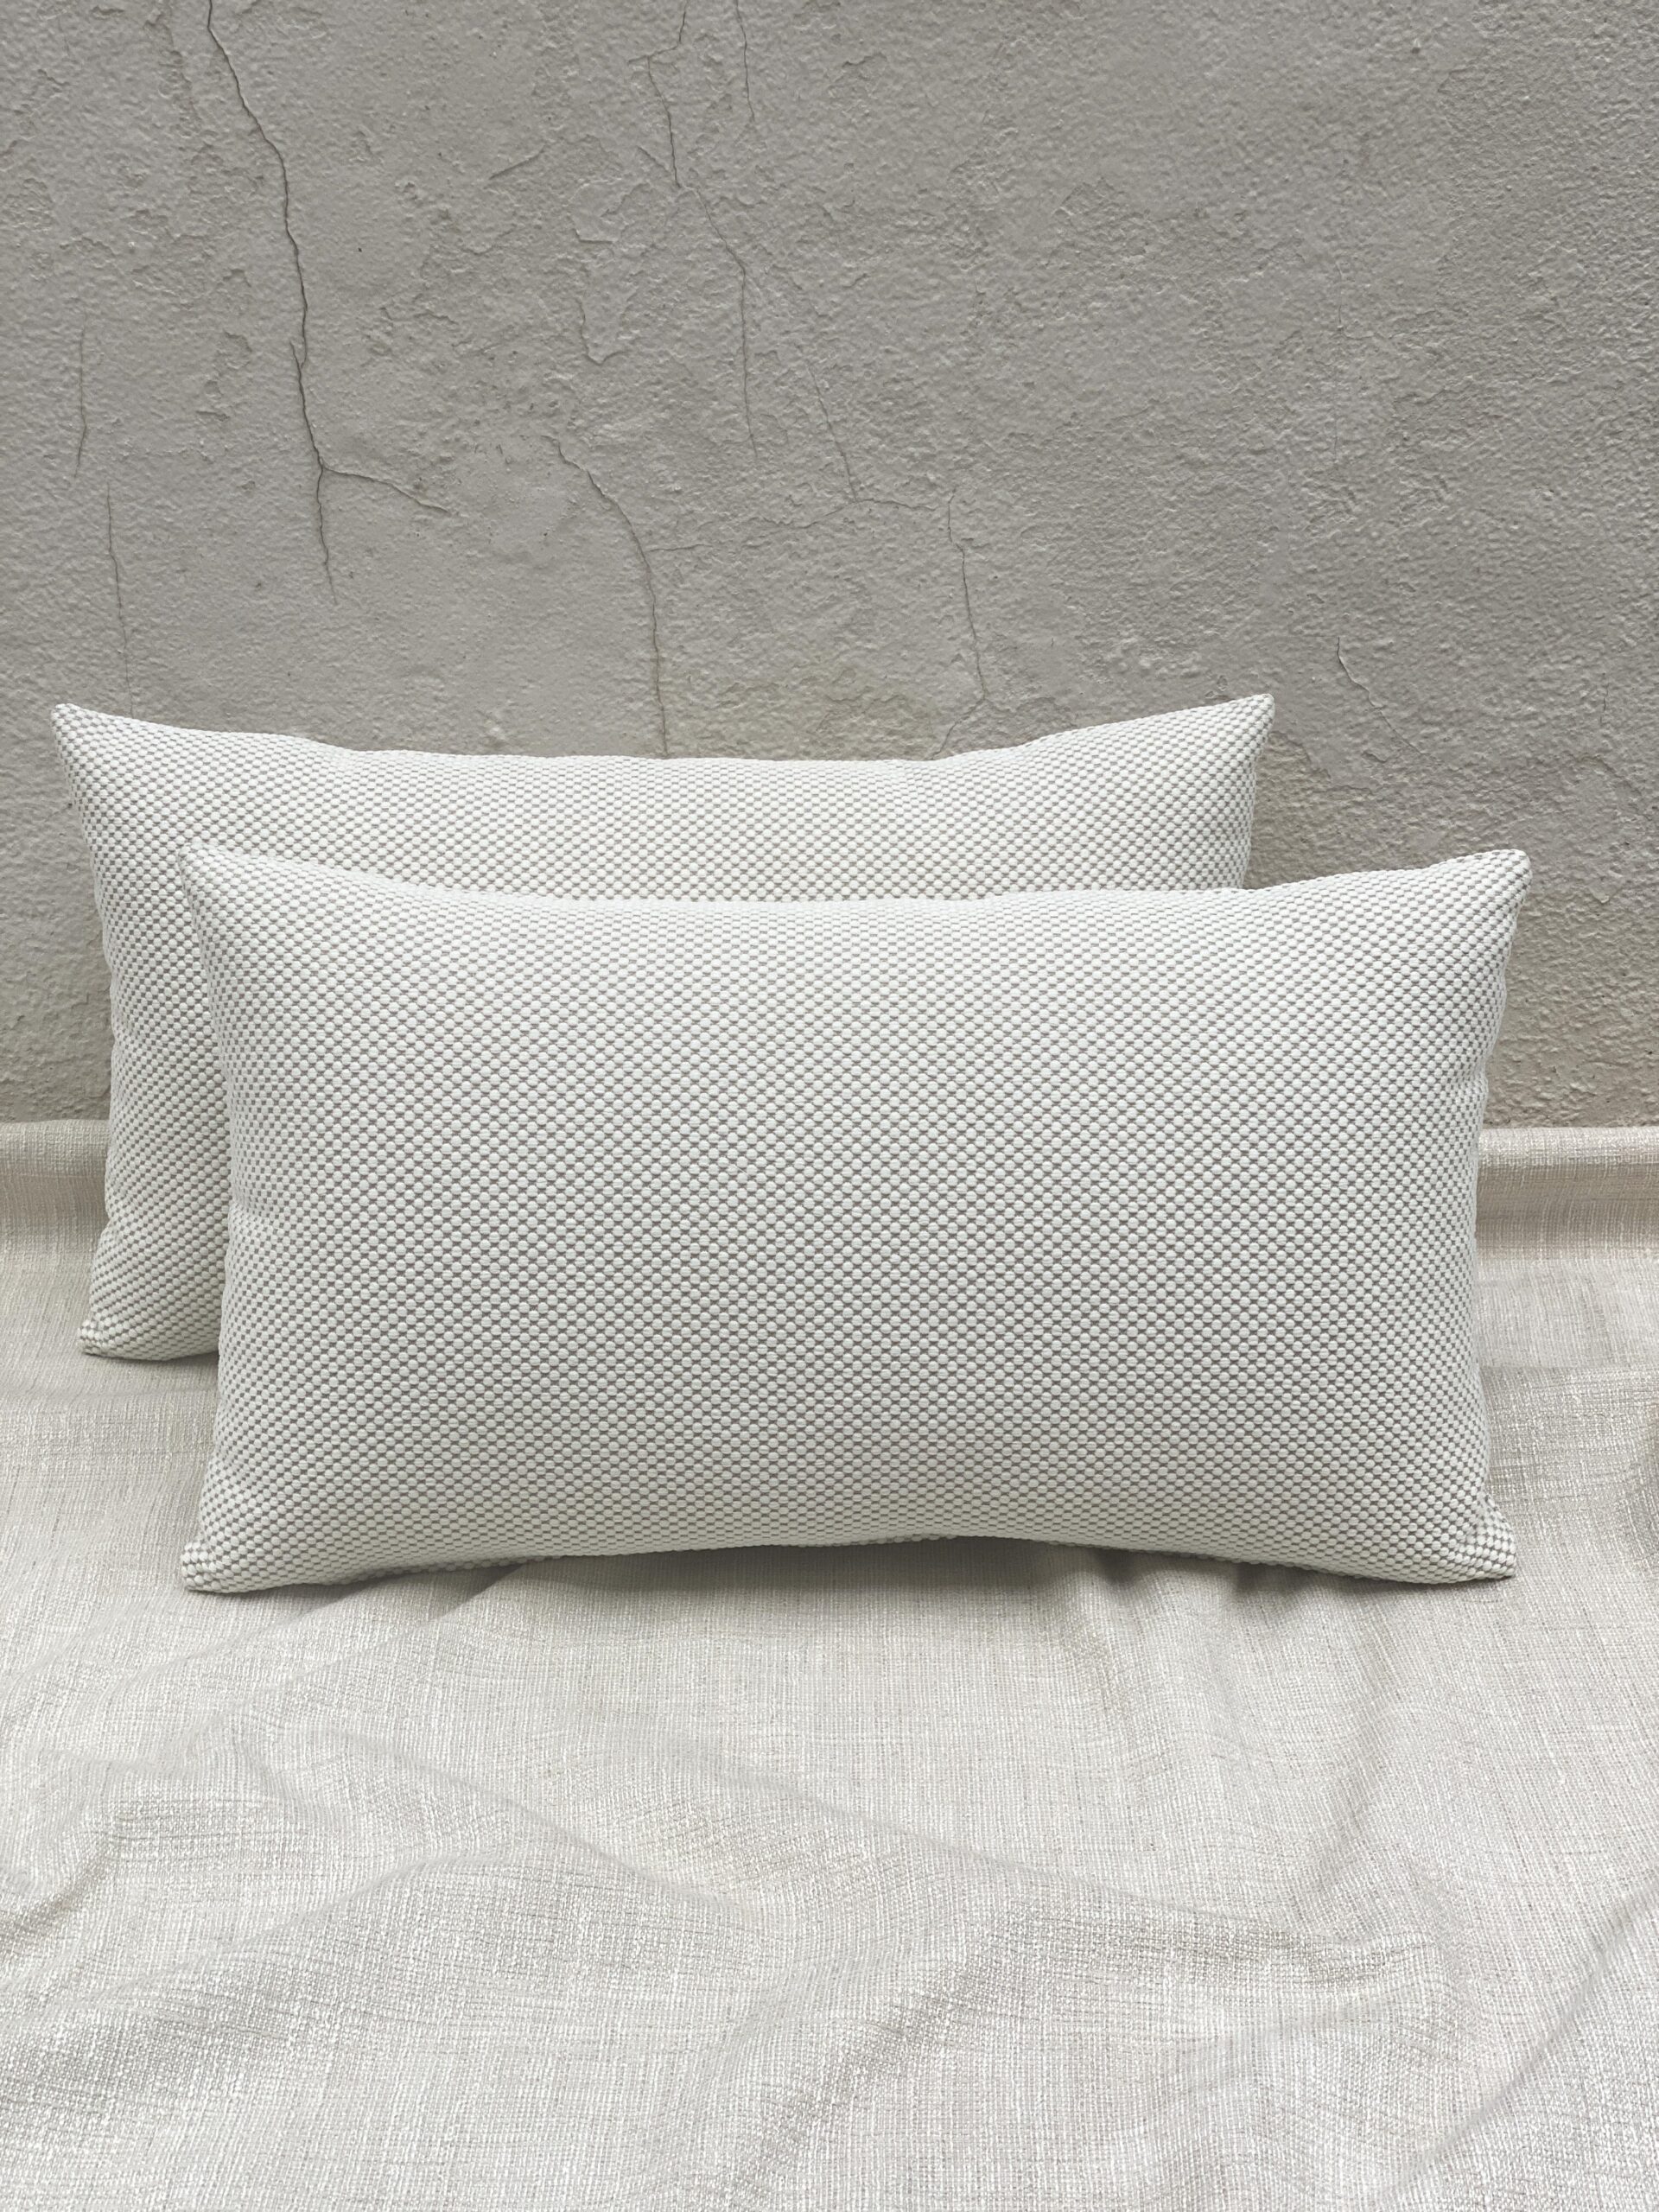 Knoll Dottie Pillows